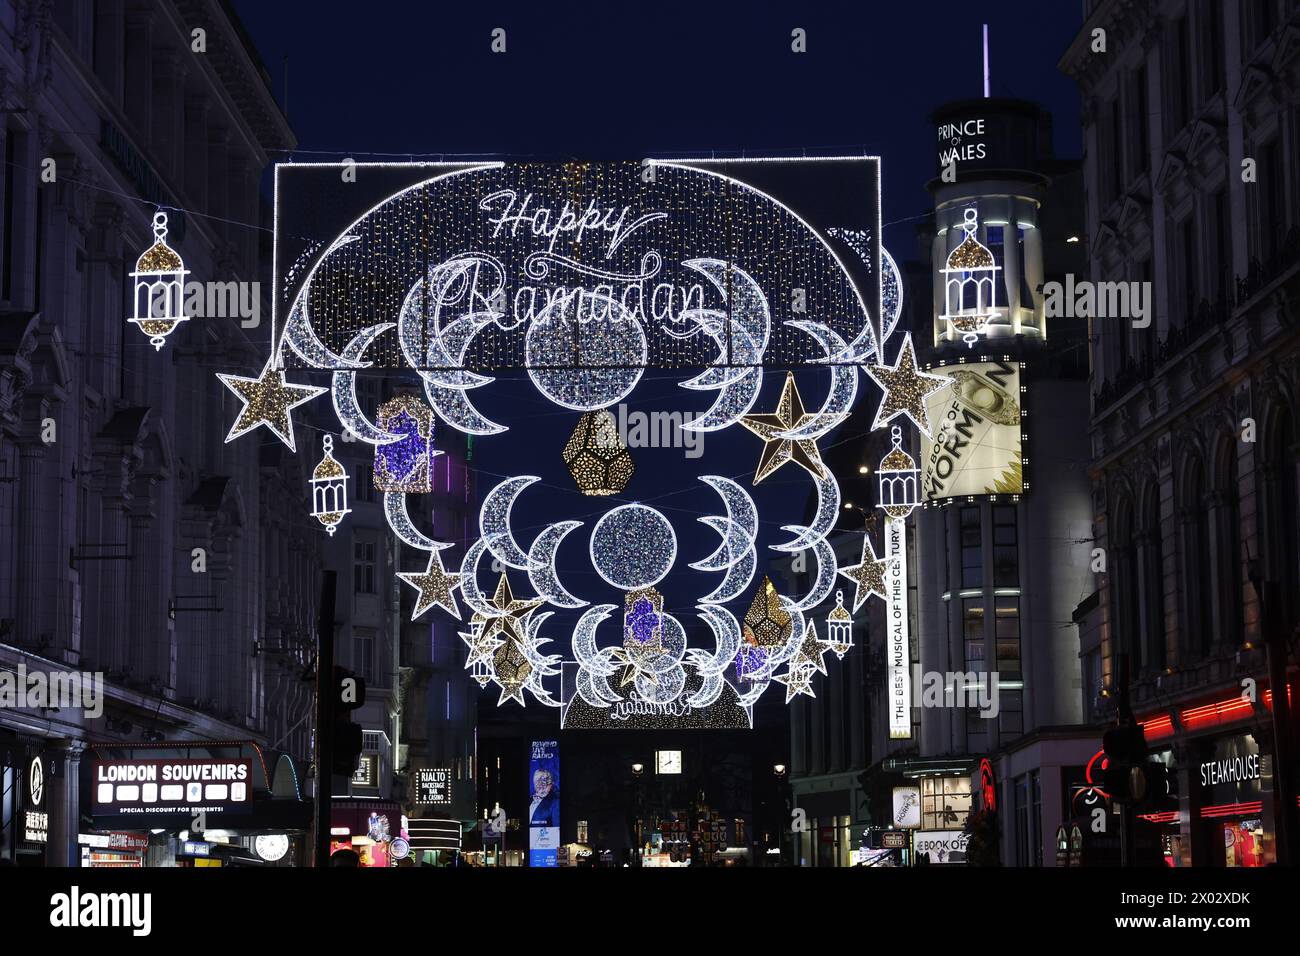 Lumières de Ramadan dans le West End, Londres, Angleterre, Royaume-Uni, Europe Banque D'Images